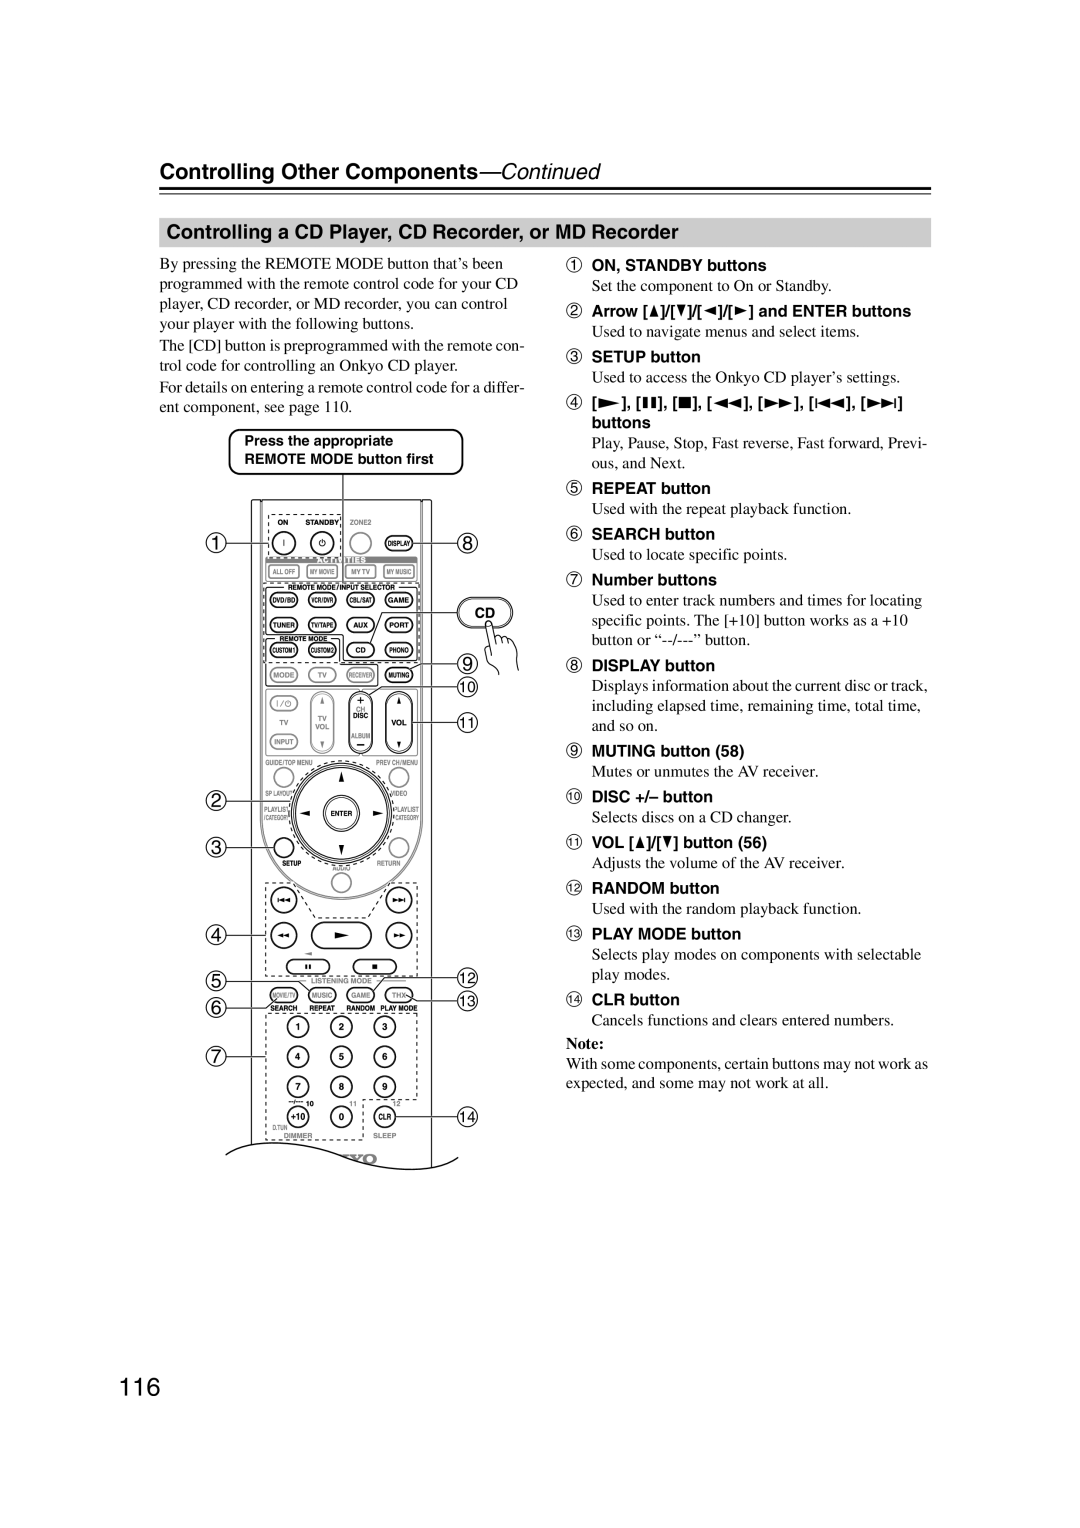 Onkyo TX-SR707 instruction manual ah i j k b c, d el, Controlling Other Components—Continued 